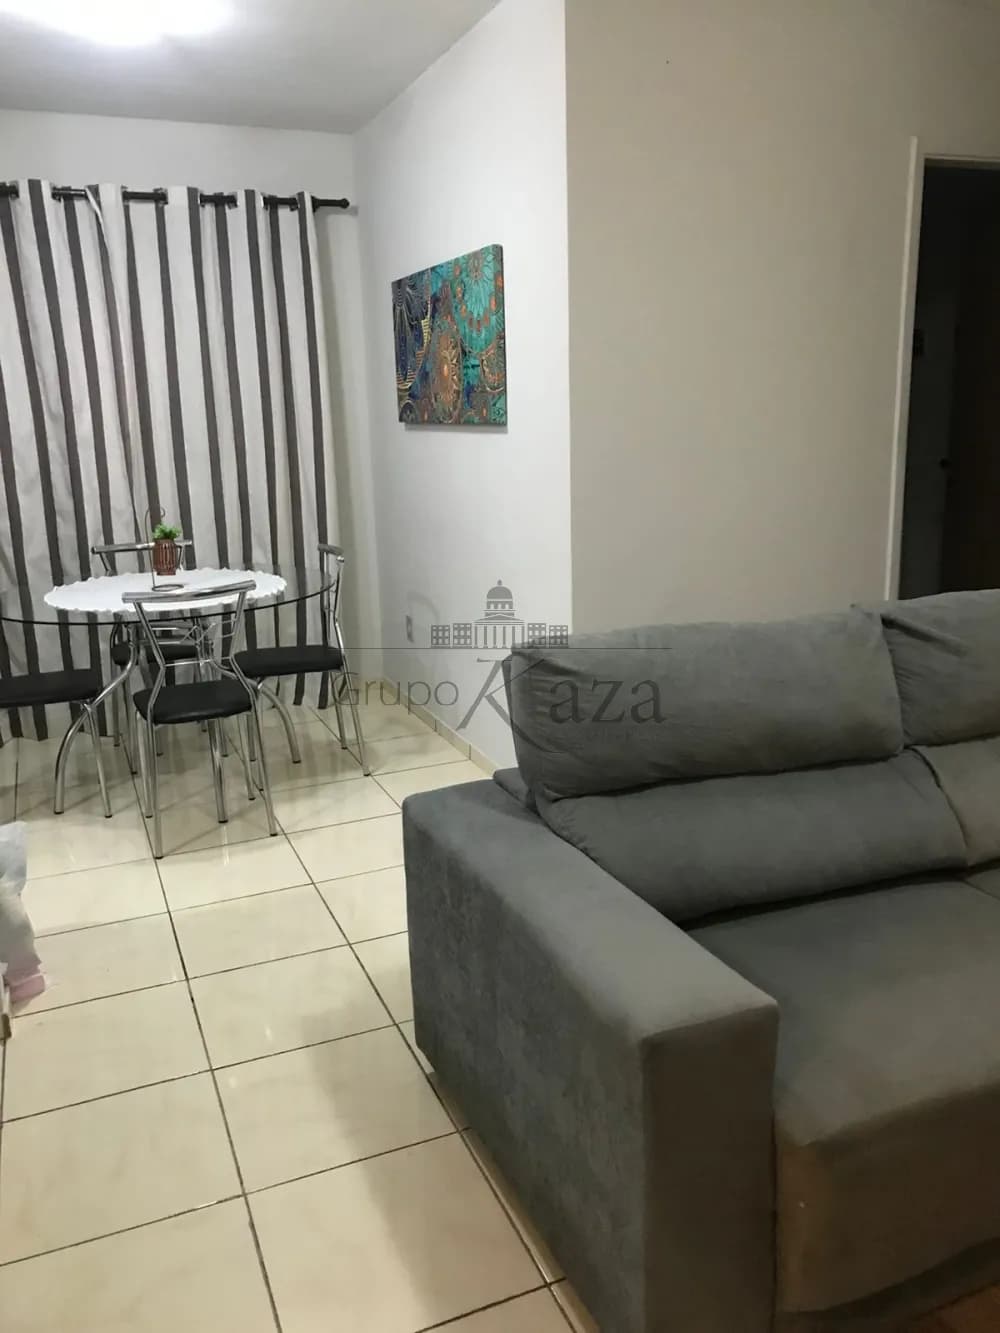 Foto 2 de Apartamento Padrão em Monte Castelo, São José dos Campos - imagem 2